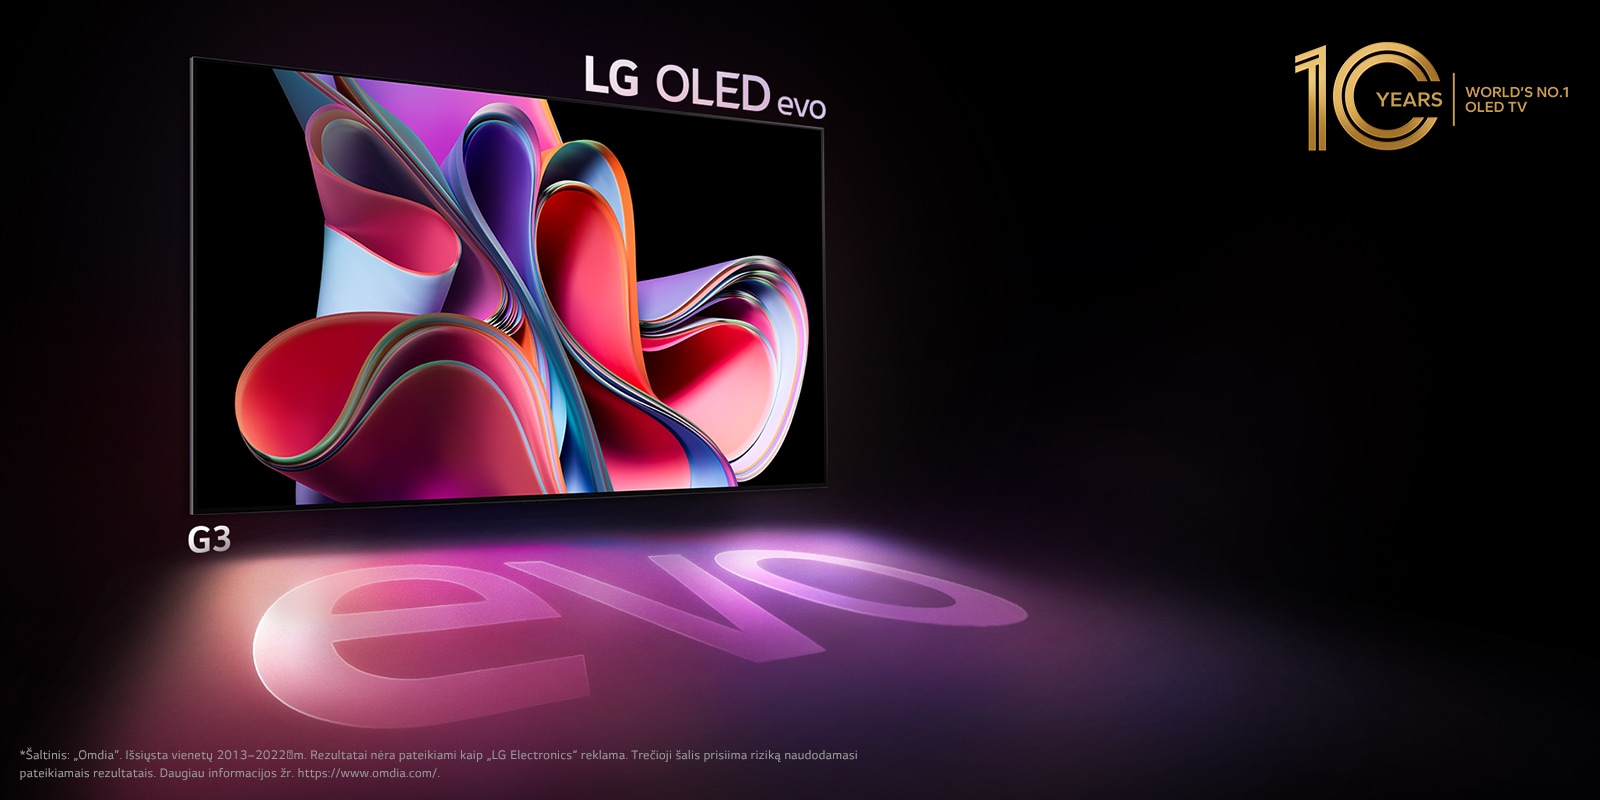 LG OLED G3 vaizdas juodame fone, matomi ryškiai rožiniai ir violetiniai meno kūriniai. Ekranas meta spalvingą šešėlį, kuriame yra žodis „evo“. Vaizdo kairiajame viršutiniame kampe yra emblema „10 metų pasaulio OLED televizorius Nr. 1“. 